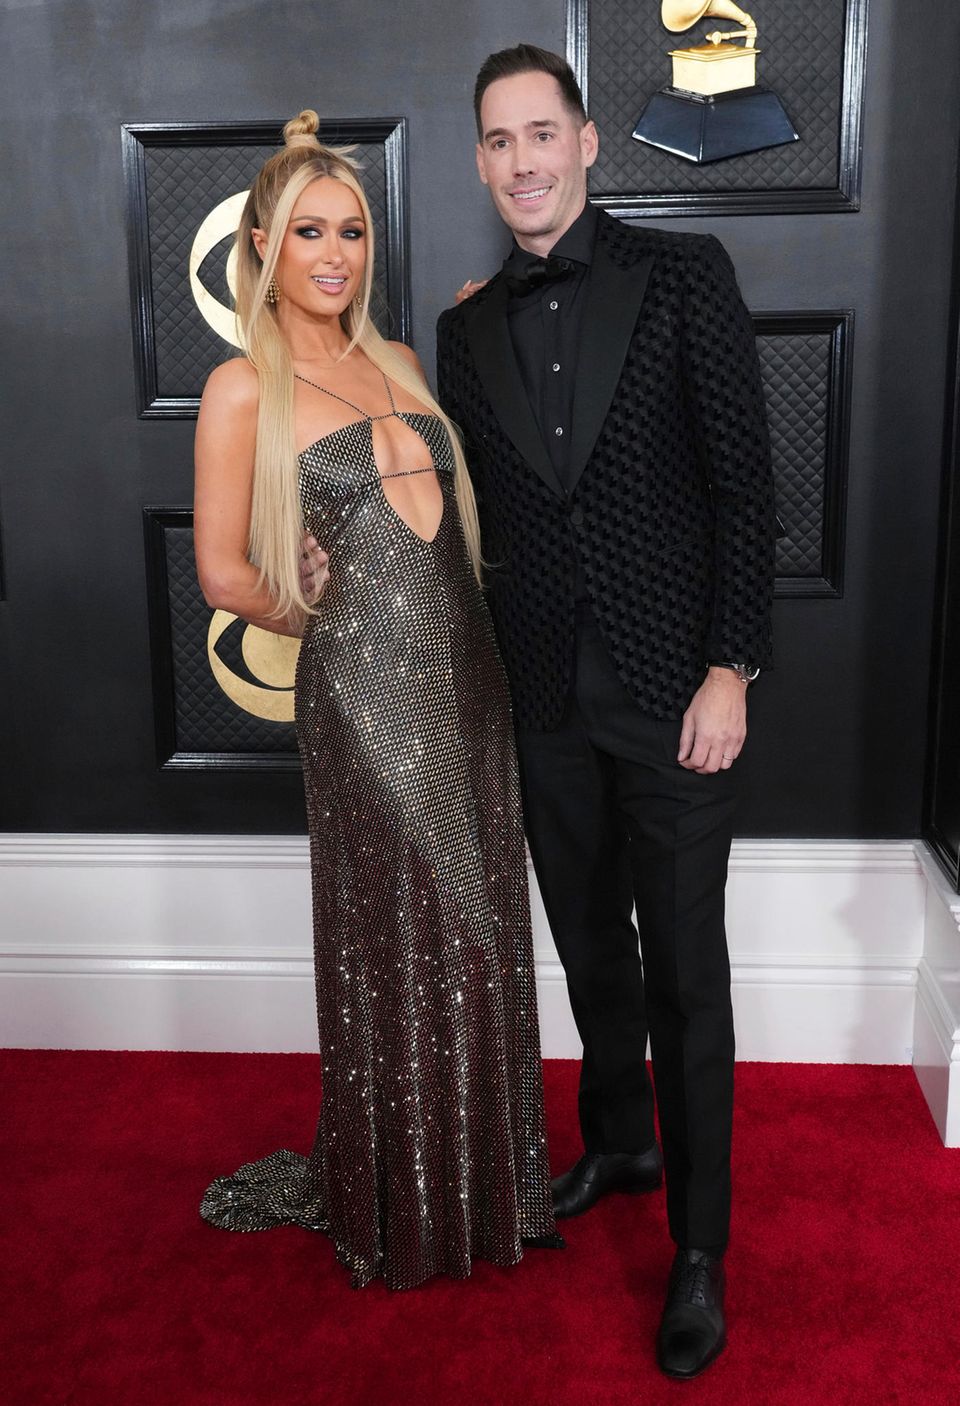 Gerade erst Eltern geworden, gönnen sich Paris Hilton und Carter Reum bei den Grammys eine glamouröse Style-Night.